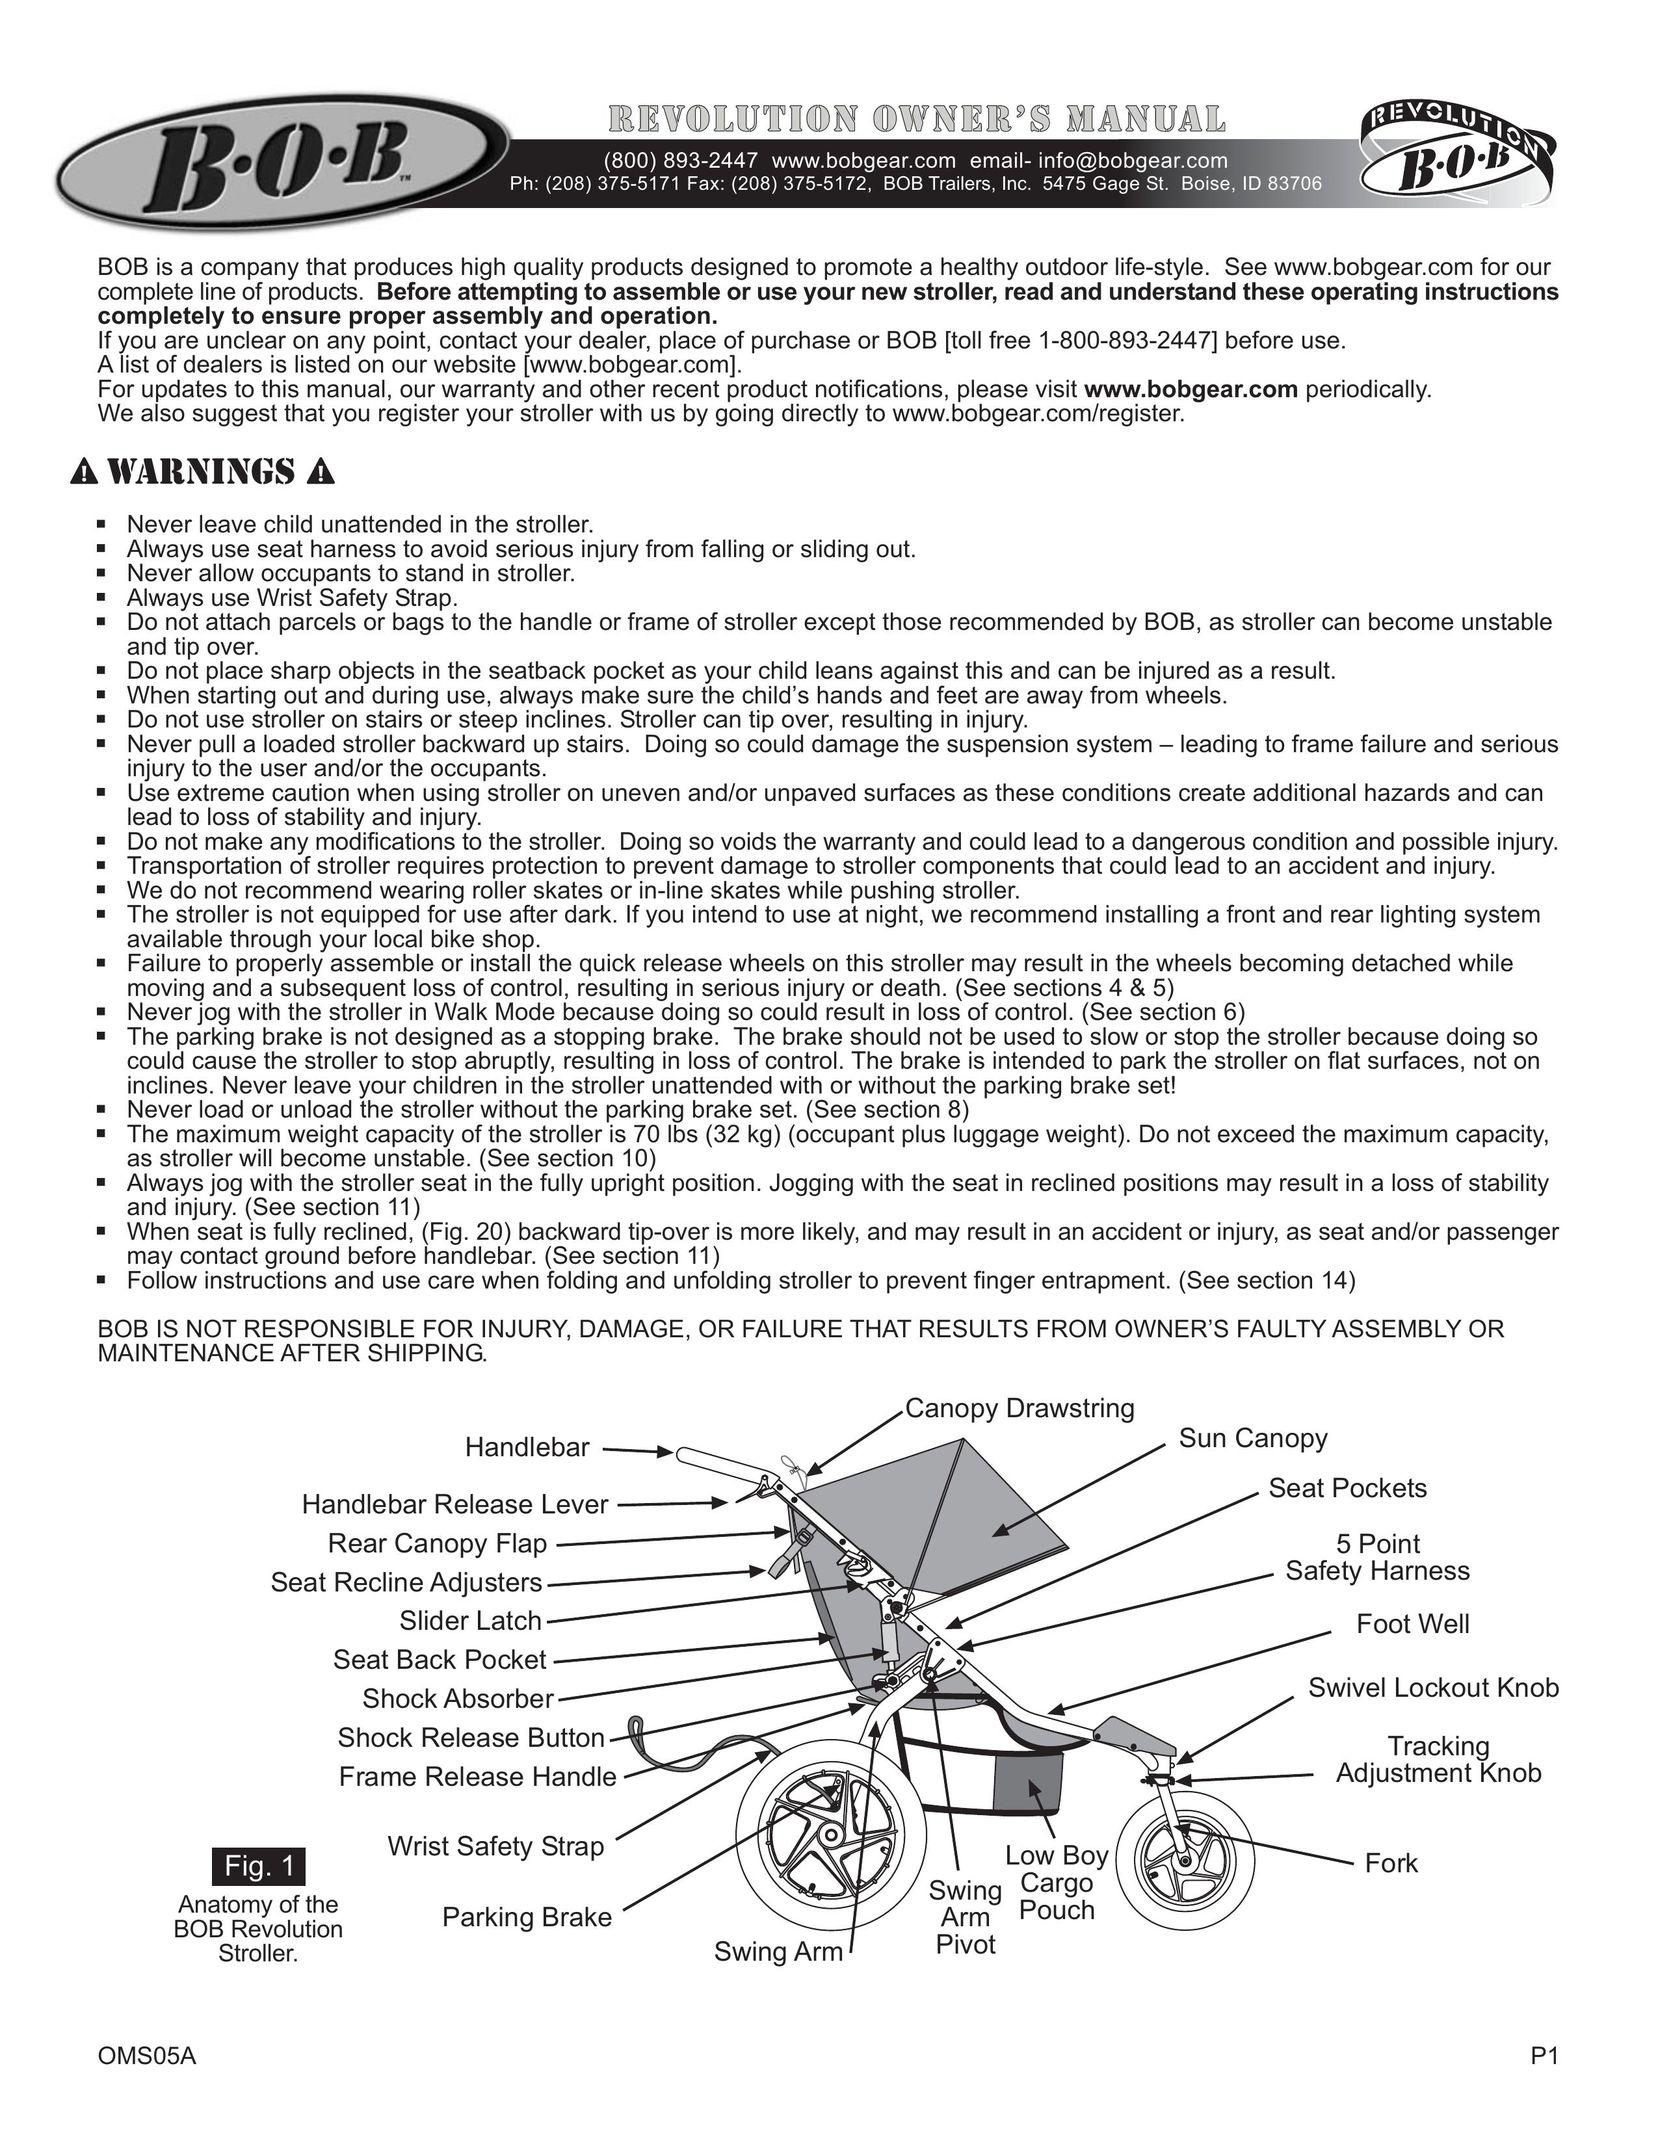 BOB OMS05A Stroller User Manual